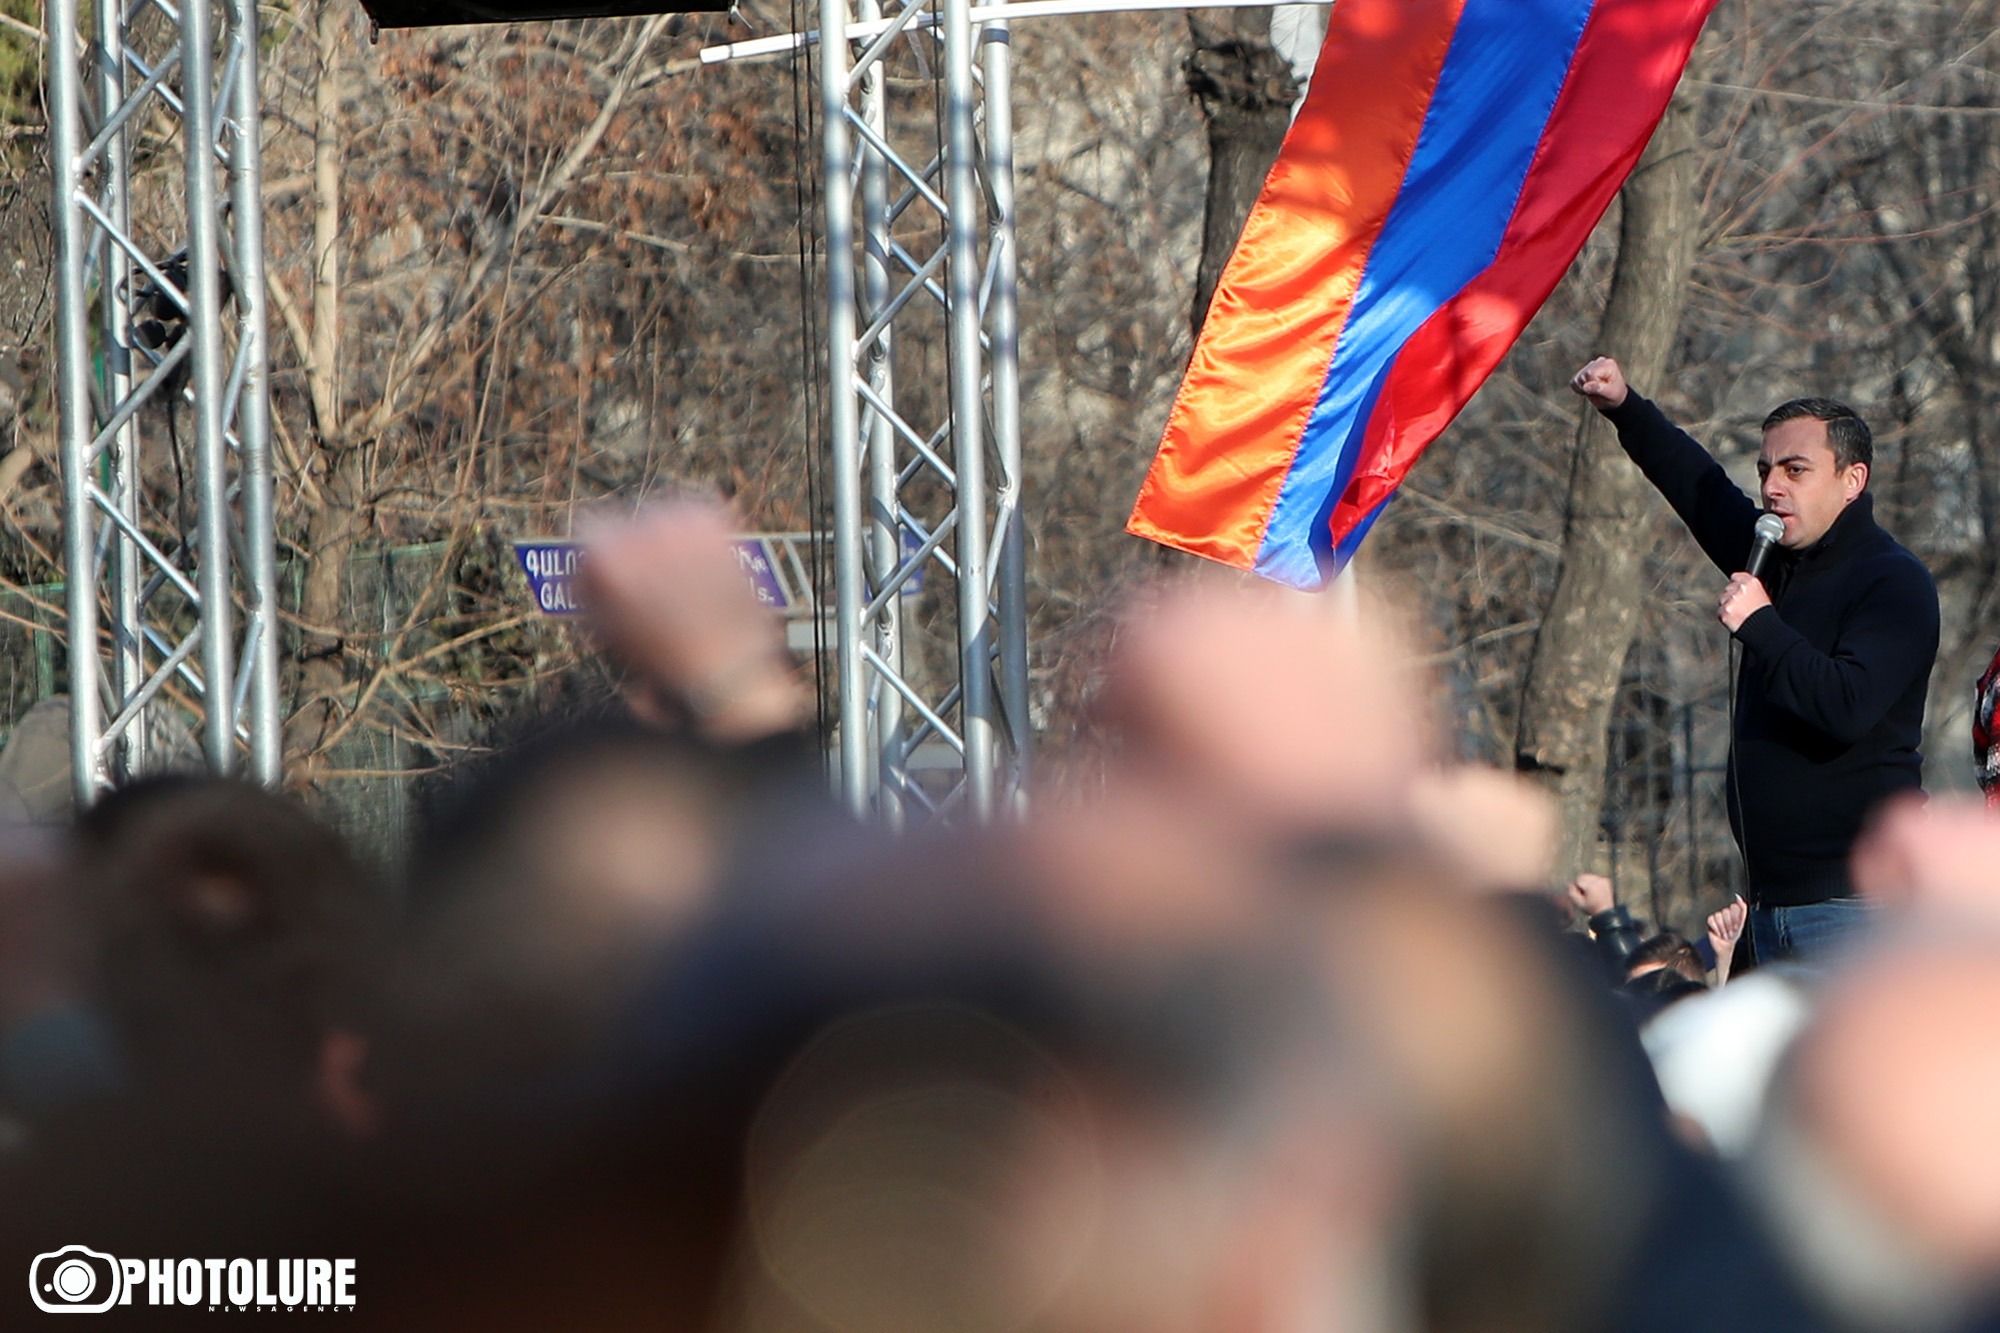 Ամբողջ Հայաստանով սկսում ենք անդադար բողոքի ակցիաներ, գործողություններ. Իշխան Սաղաթելյան